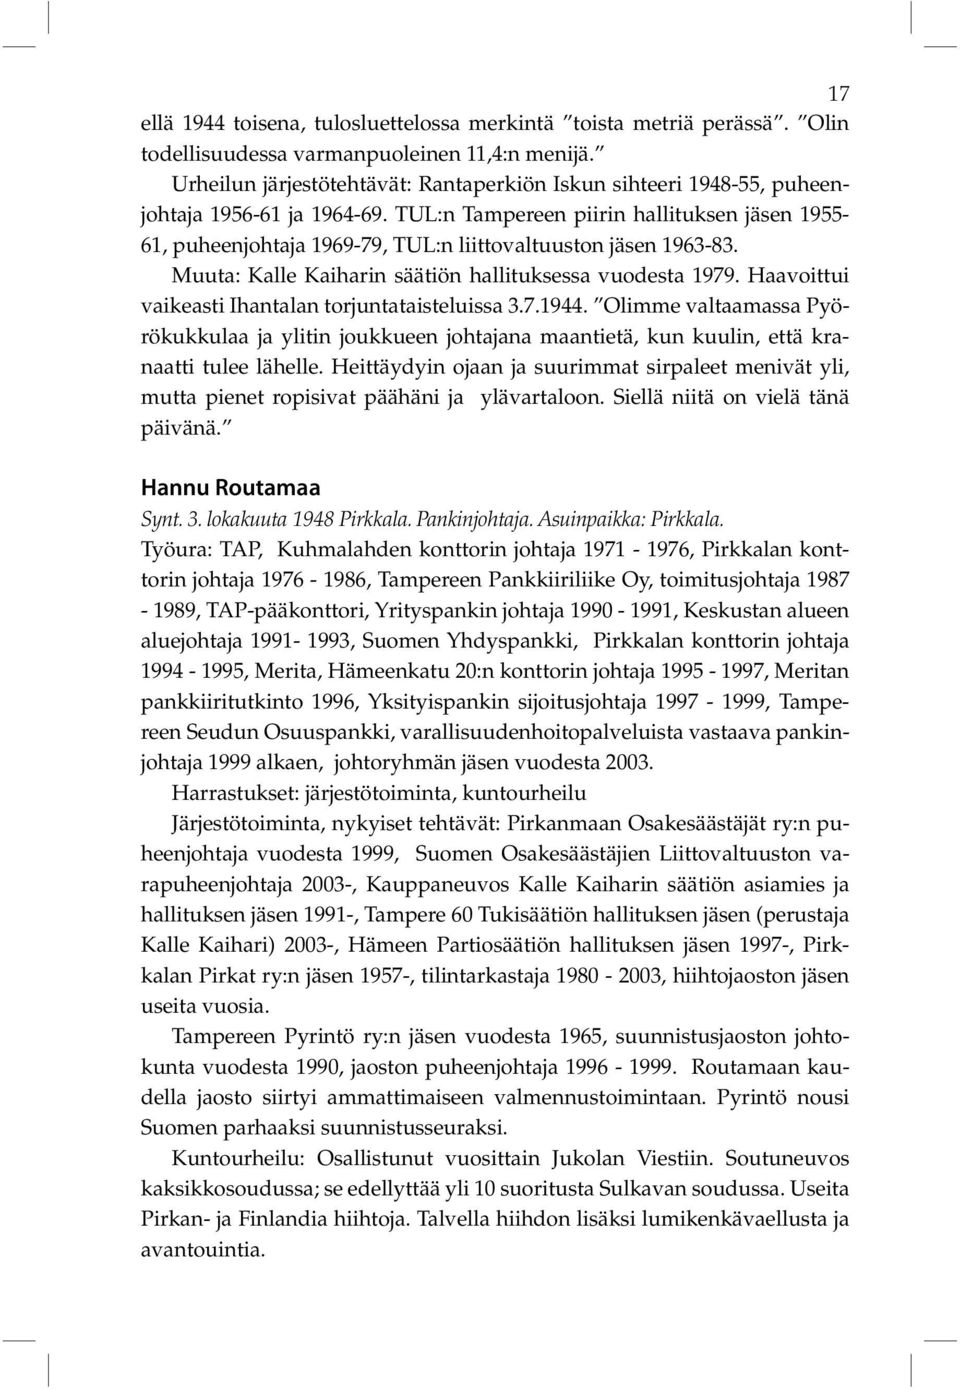 TUL:n Tampereen piirin hallituksen jäsen 1955-61, puheenjohtaja 1969-79, TUL:n liittovaltuuston jäsen 1963-83. Muuta: Kalle Kaiharin säätiön hallituksessa vuodesta 1979.